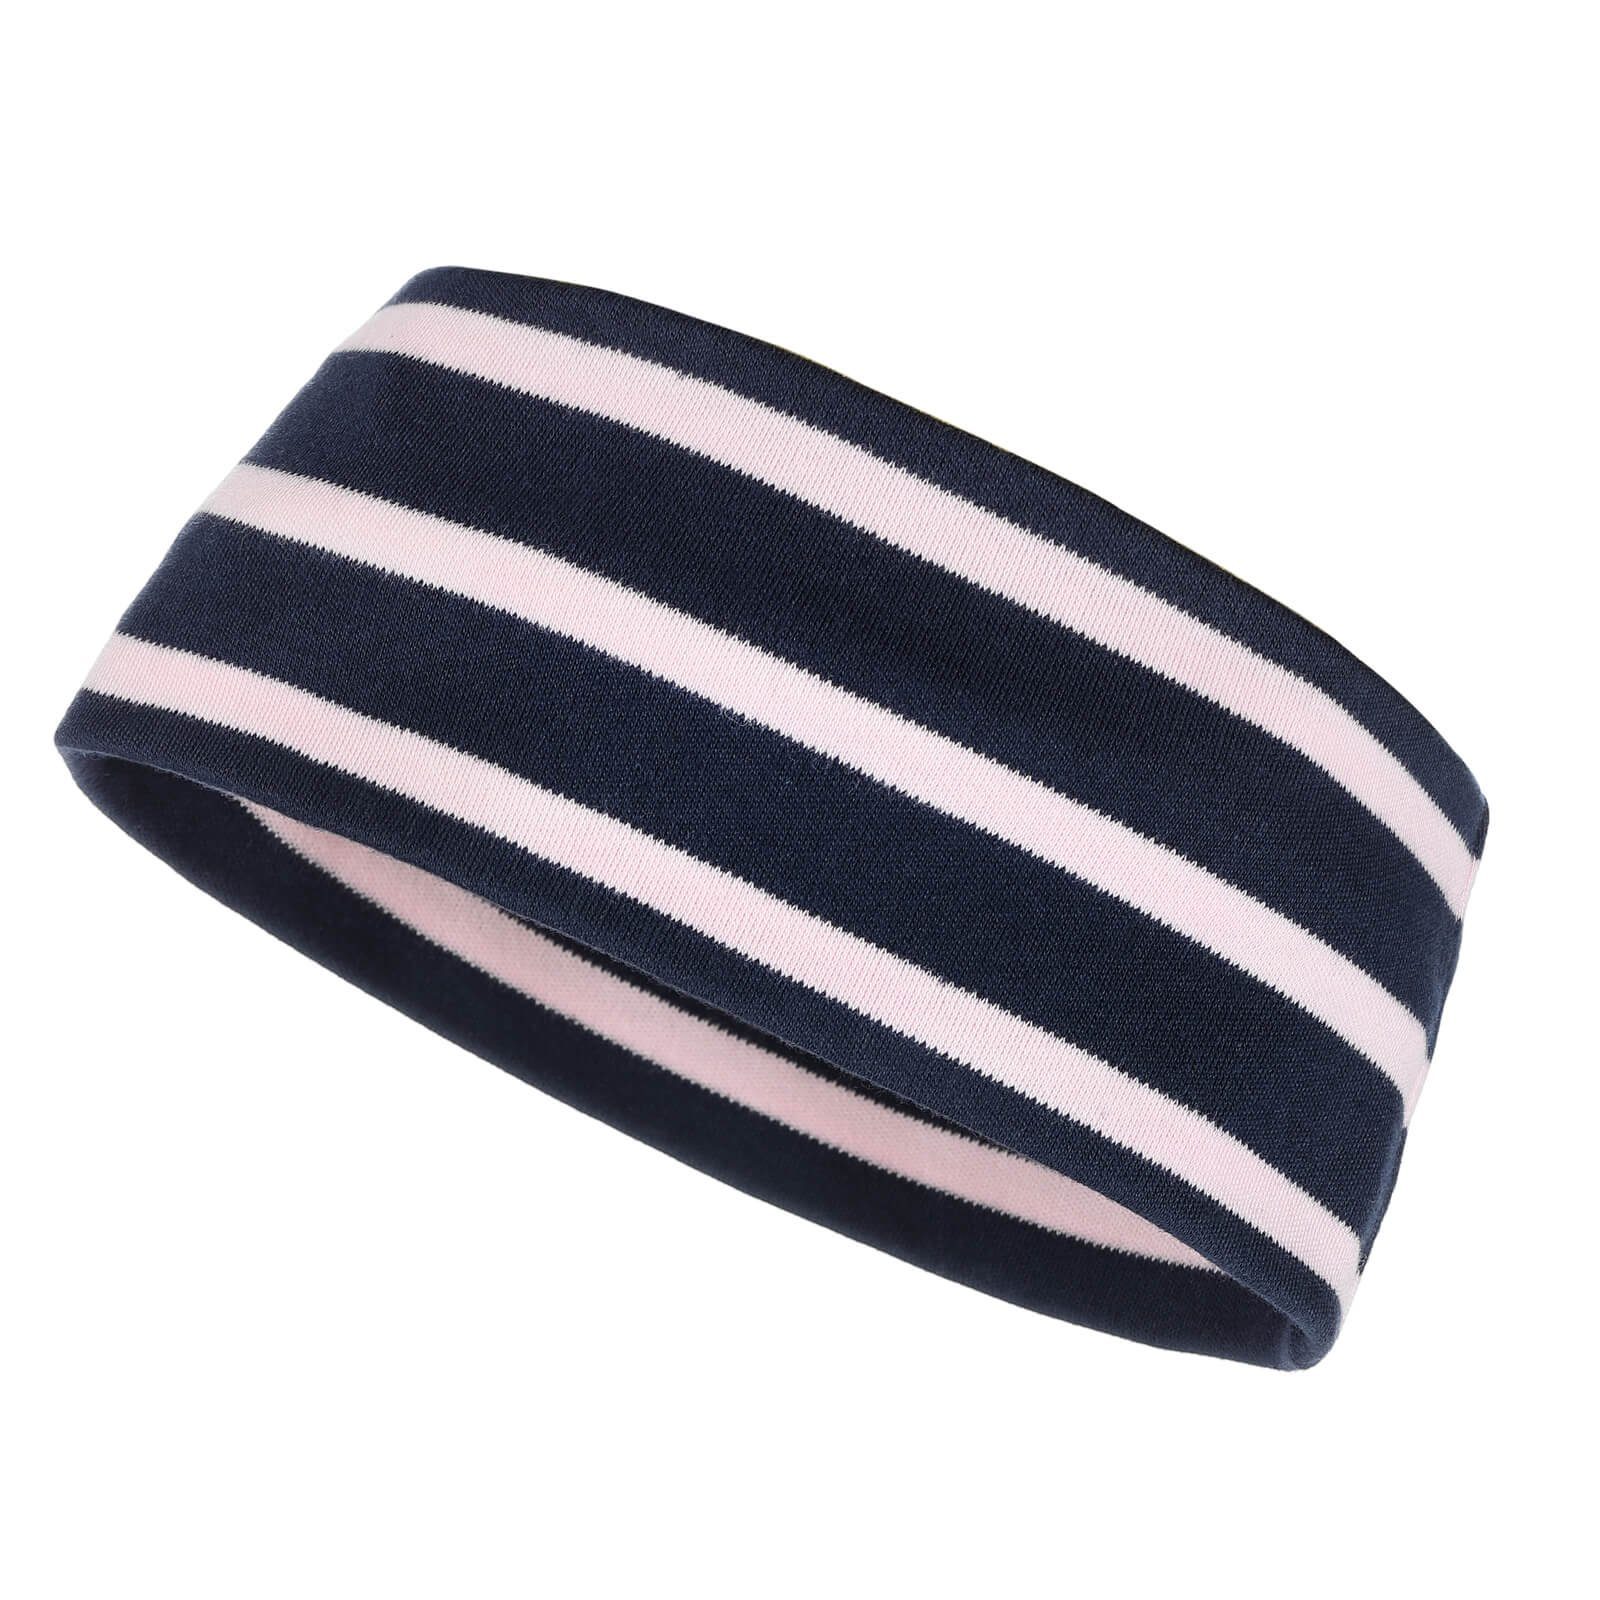 modAS Stirnband Unisex Kopfband Maritim für Kinder und Erwachsene zweilagig Baumwolle (43) blau / rosa